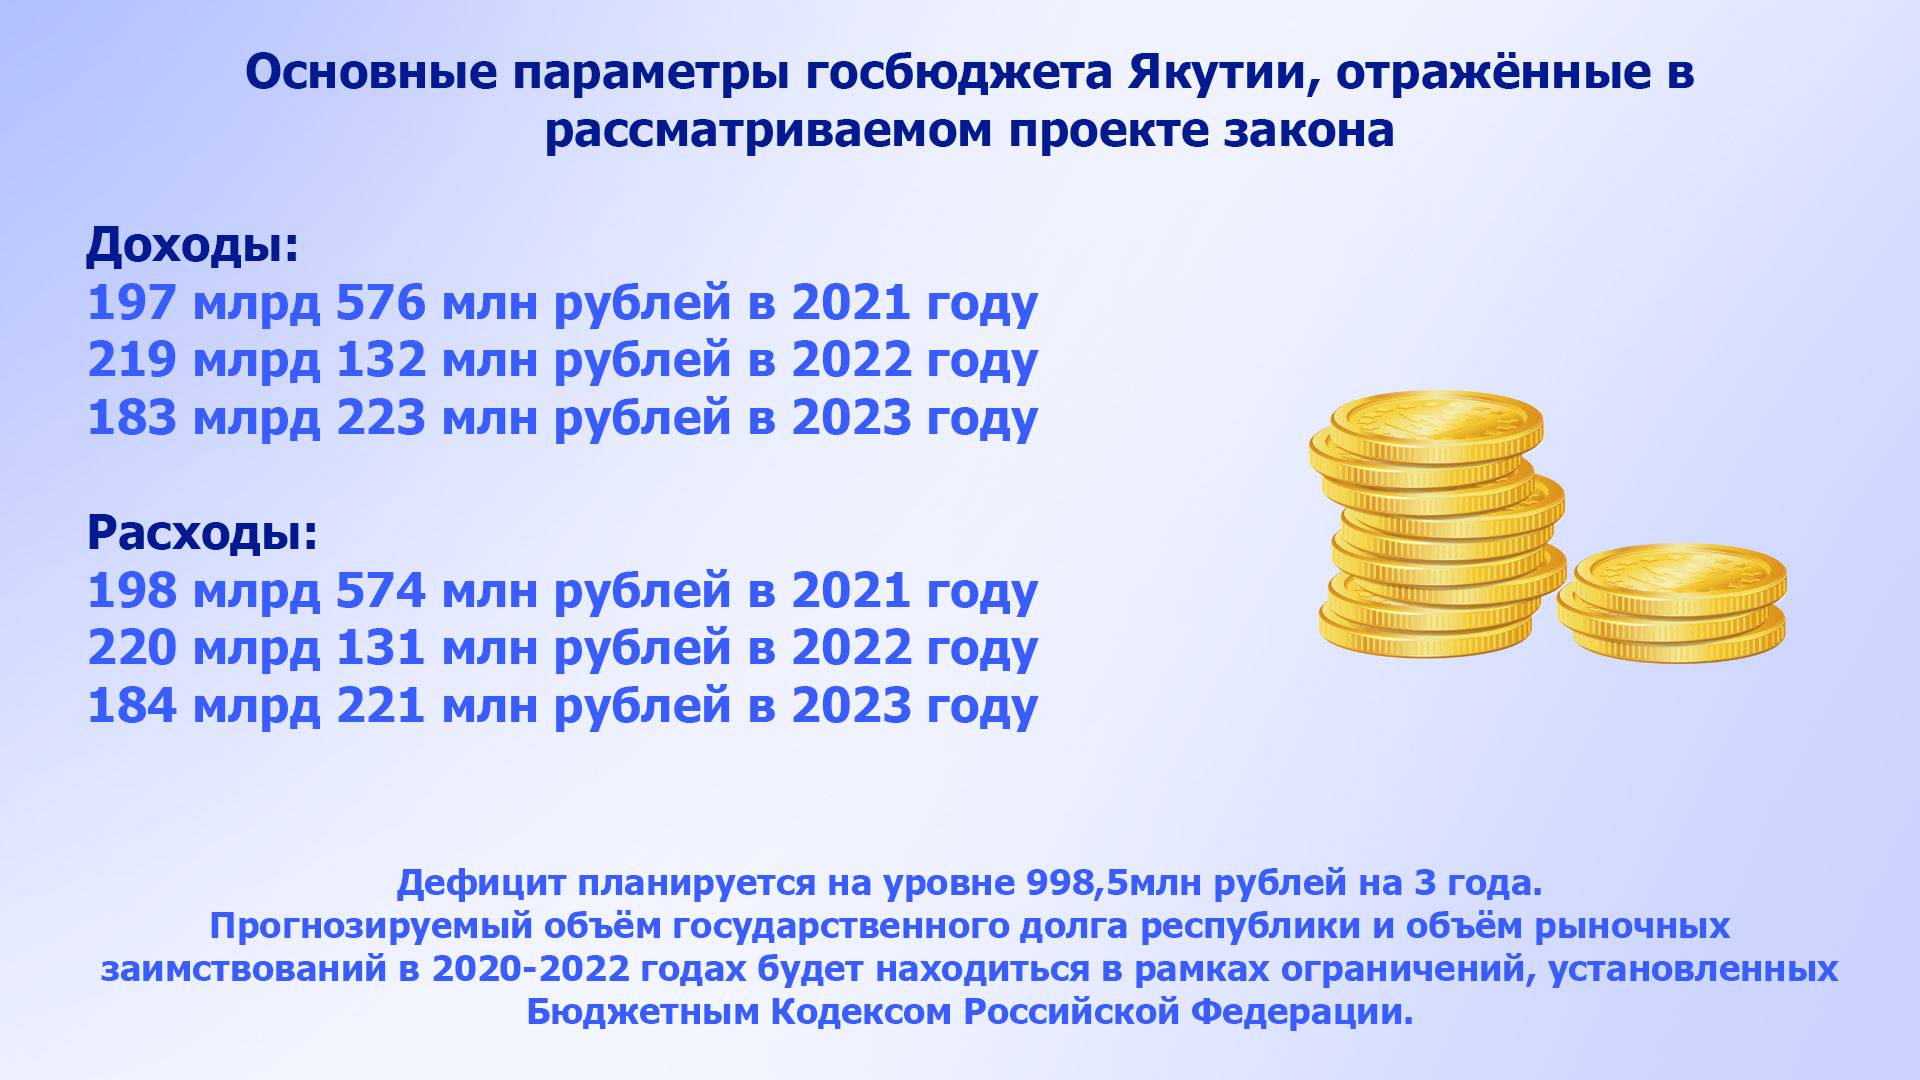 Правила назначения пособий для малоимущих изменятся в 2022 году 19.11.2021 | банки.ру